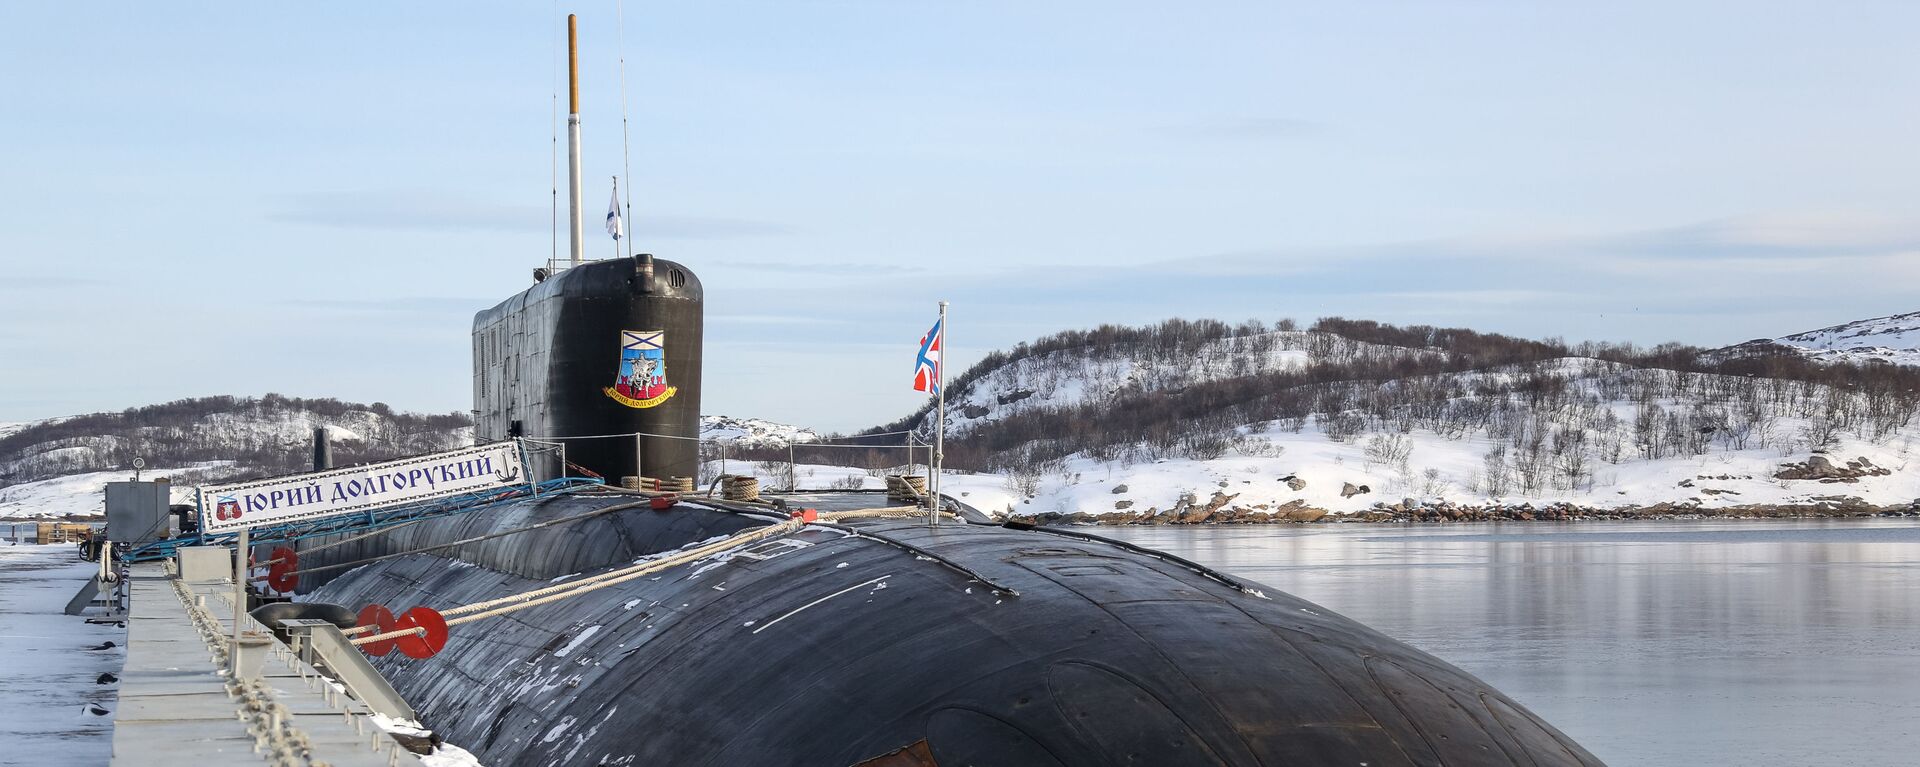 Атомная подводная лодка К-535 Юрий Долгорукий на причале в Гаджиево - Sputnik Latvija, 1920, 26.12.2019